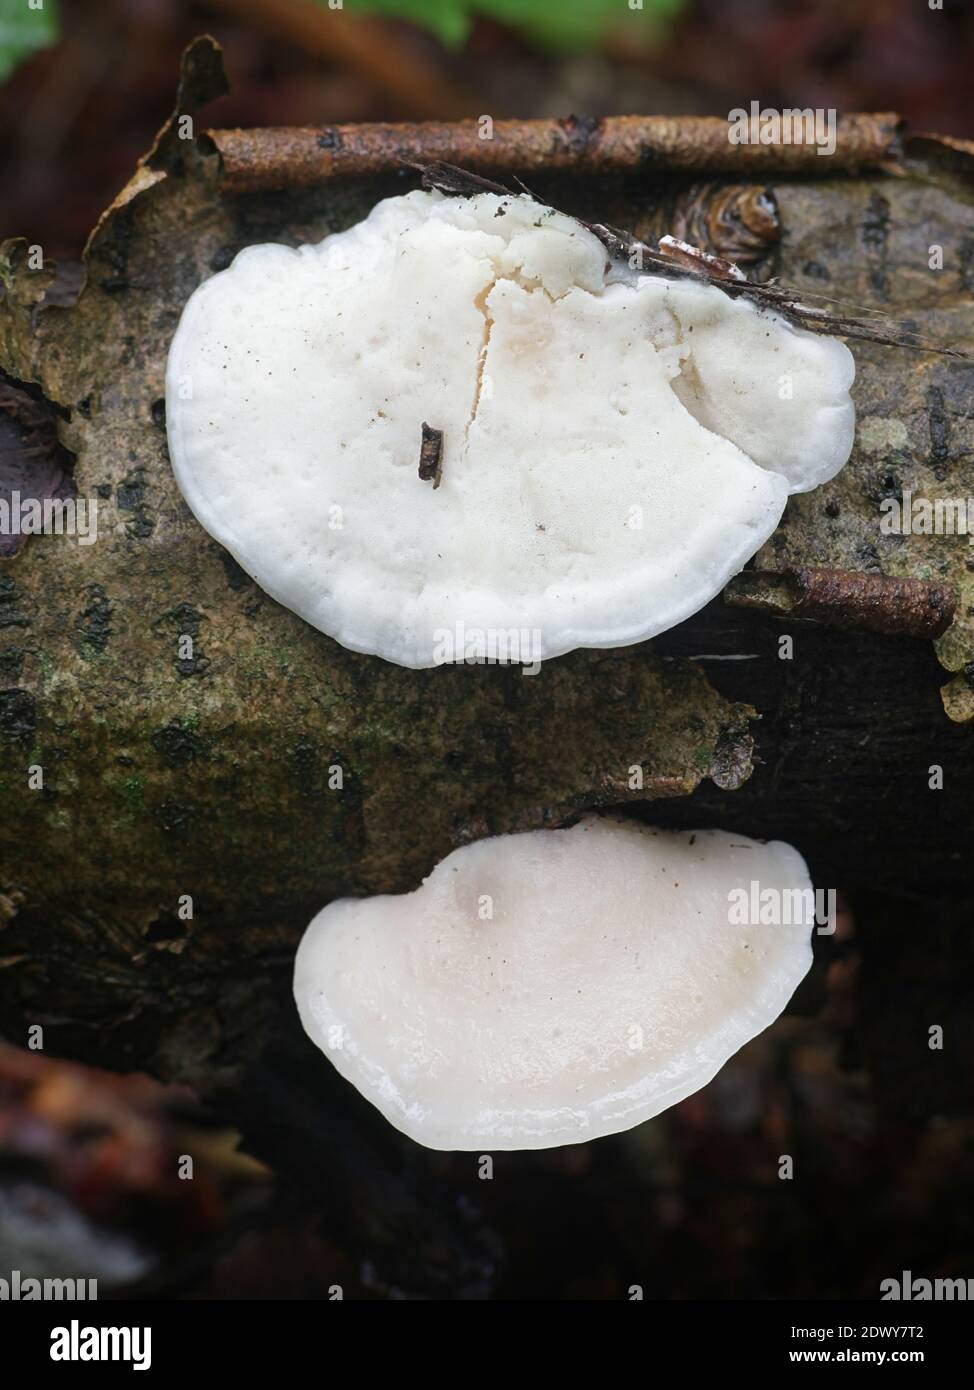 Tyromyces chioneus, connu sous le nom de polypore de fromage blanc, se tarissent de champignons finlandais Banque D'Images